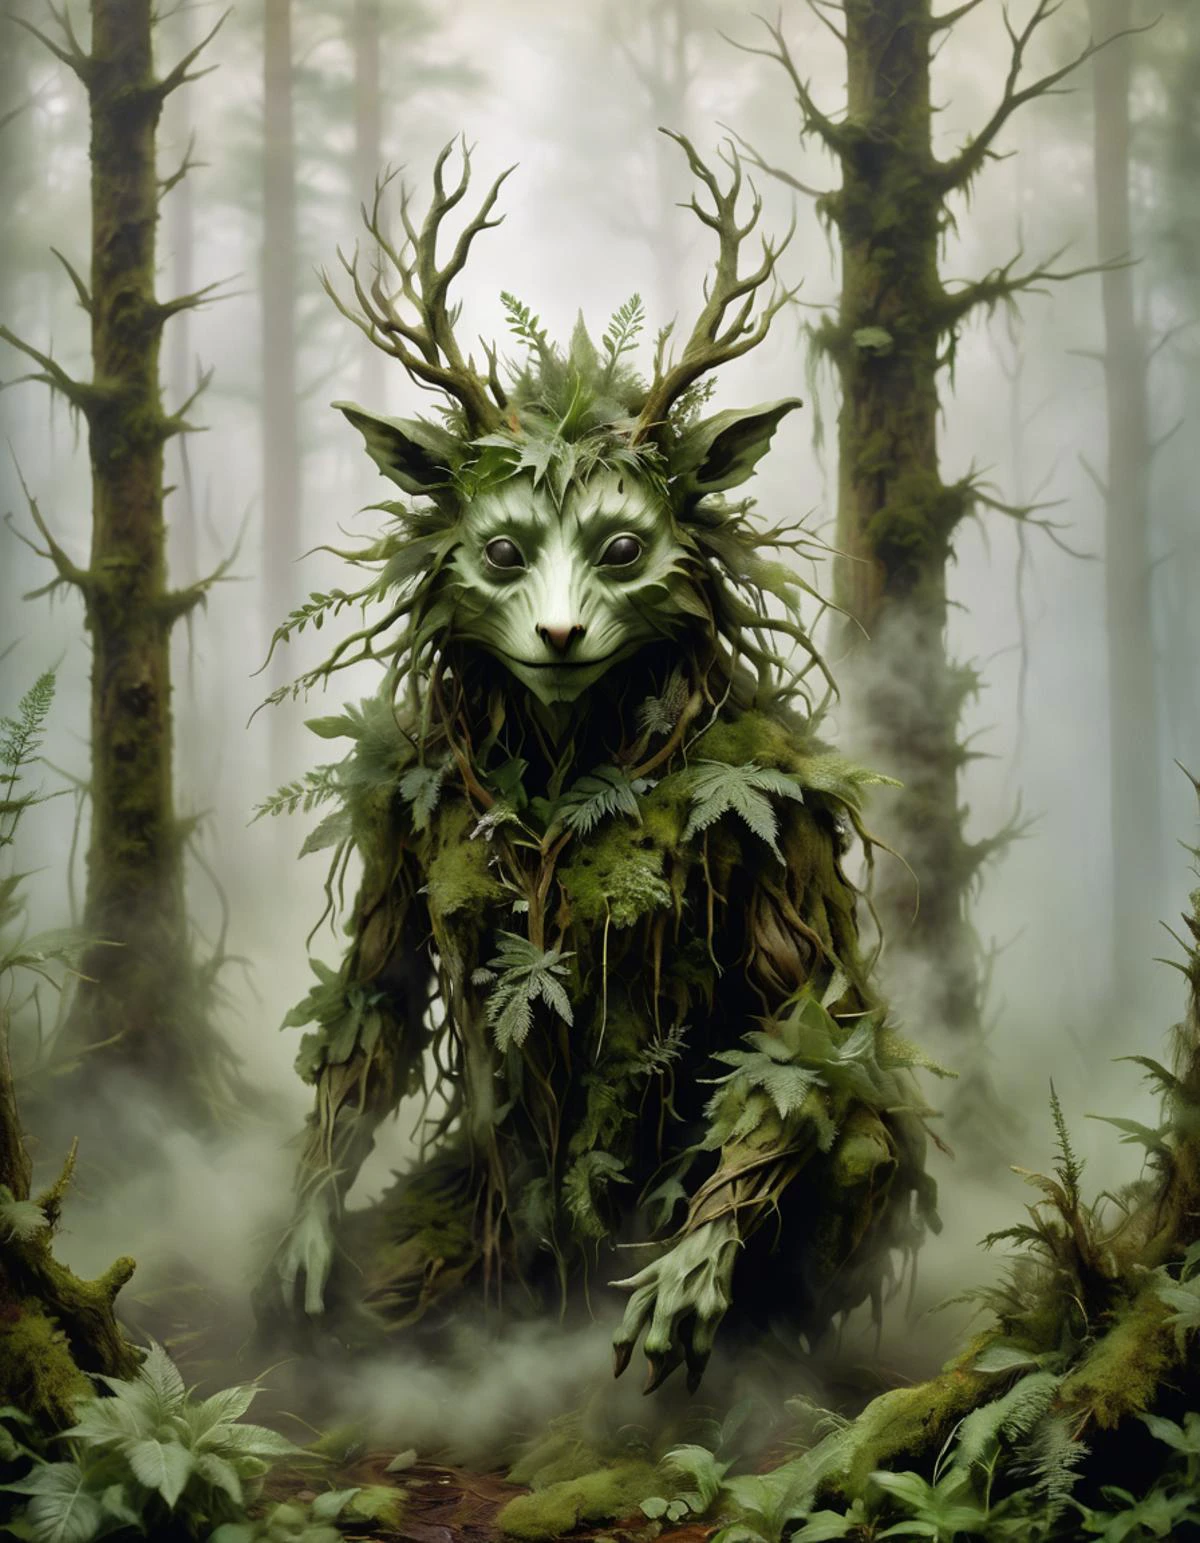 濃い霧からできた森の生き物, 霧と豊かな植生に囲まれた. ウェンディ・フラウドのエコアート風.